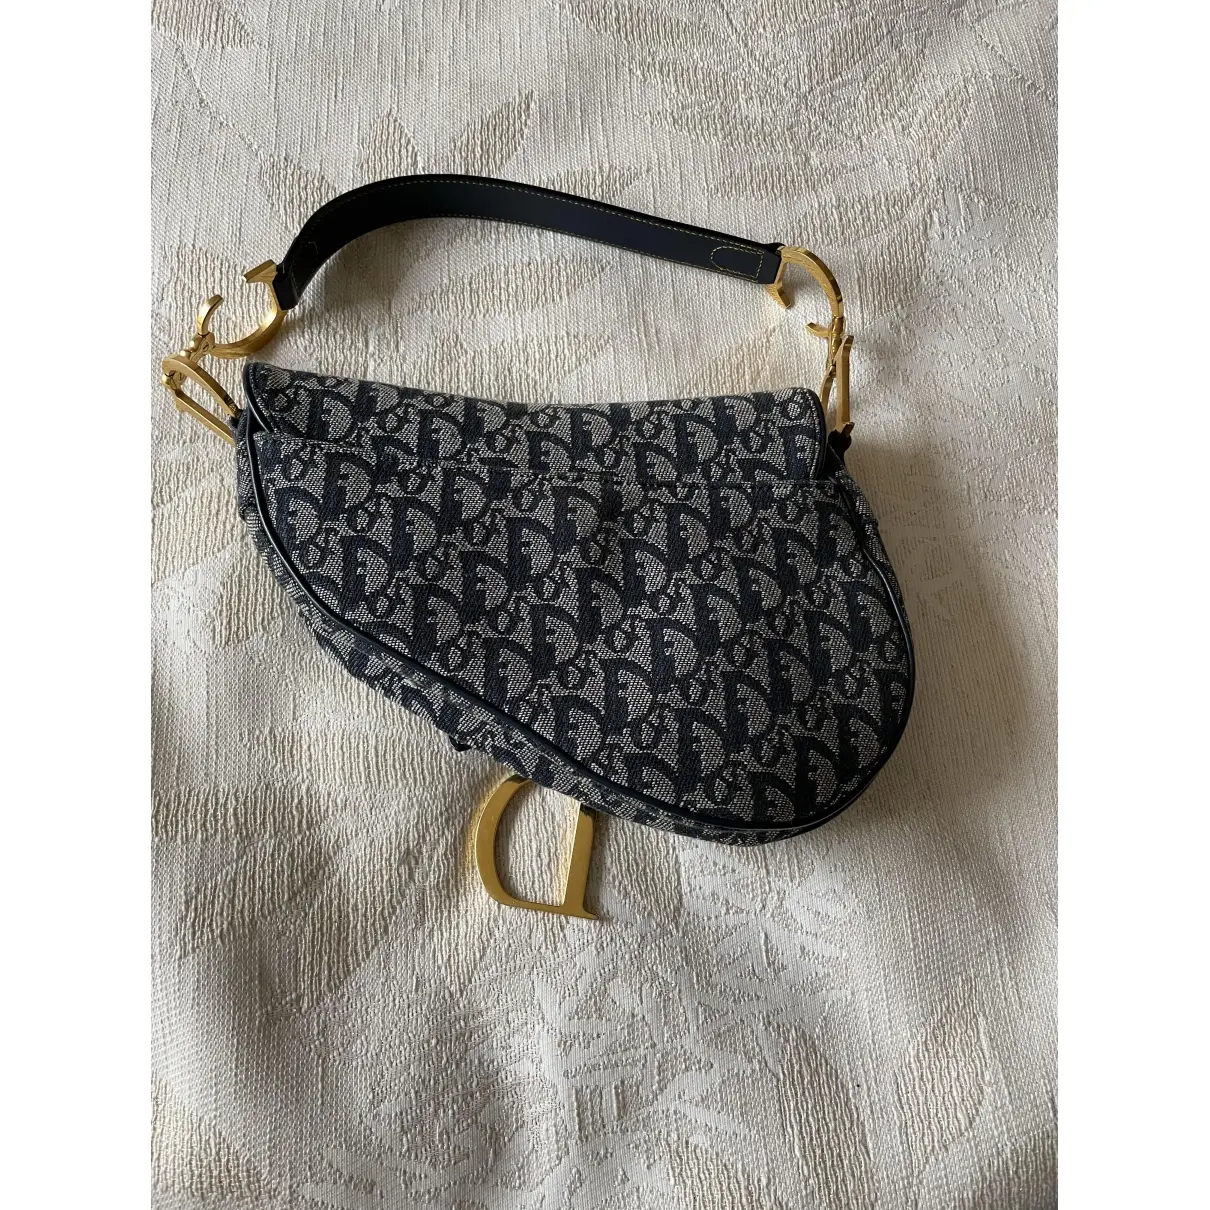 Buy Dior Saddle Vintage cloth handbag online - Vintage